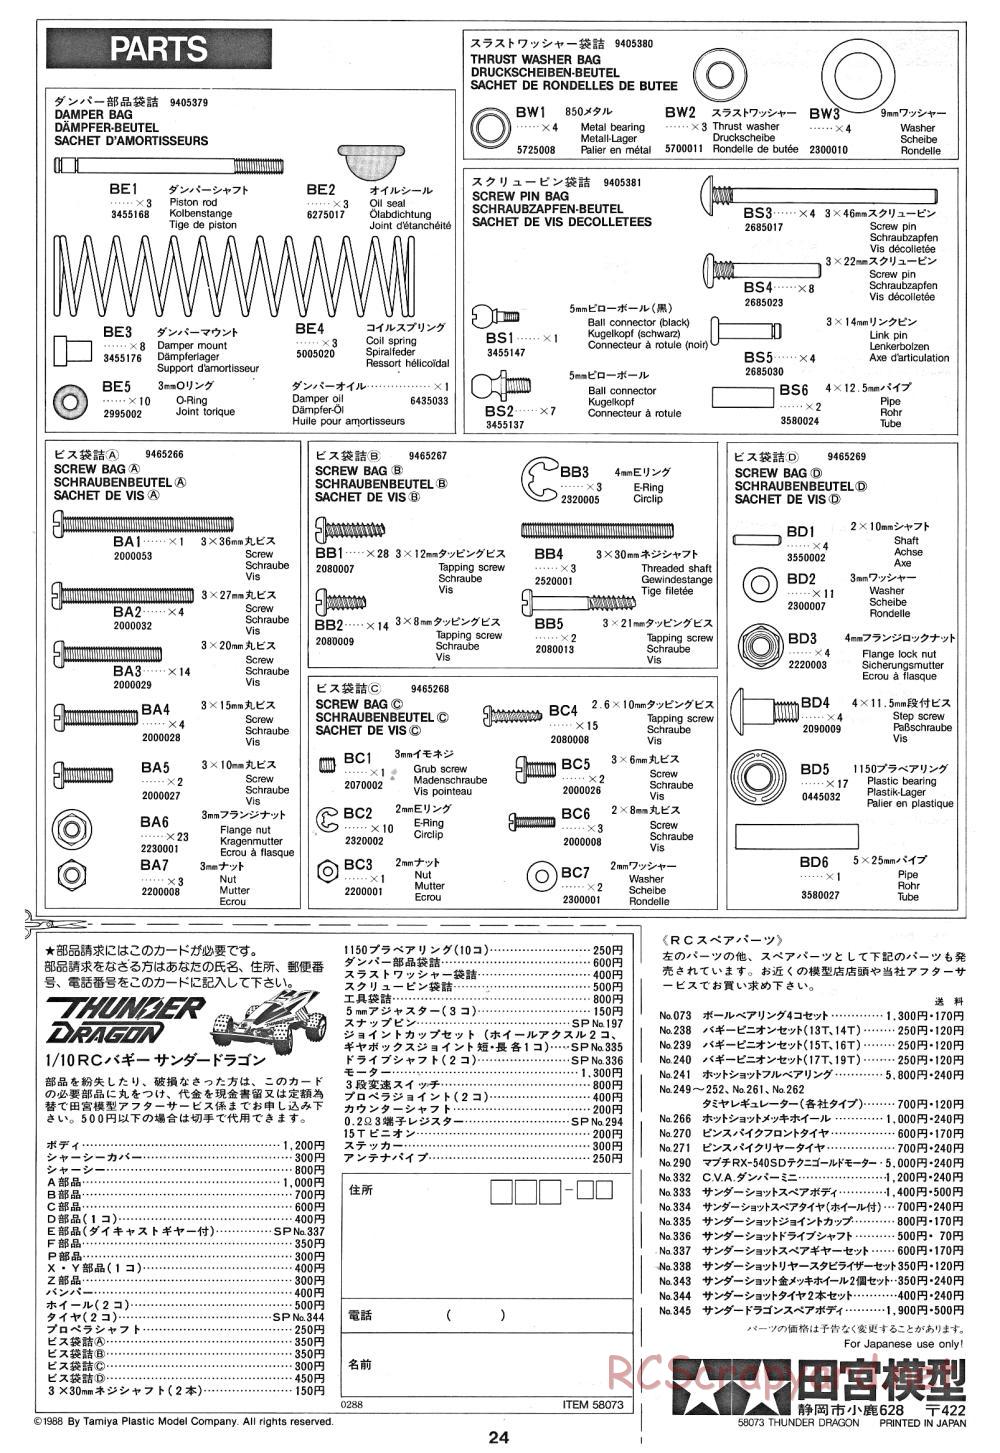 Tamiya - Thunder Dragon - 58073 - Manual - Page 24